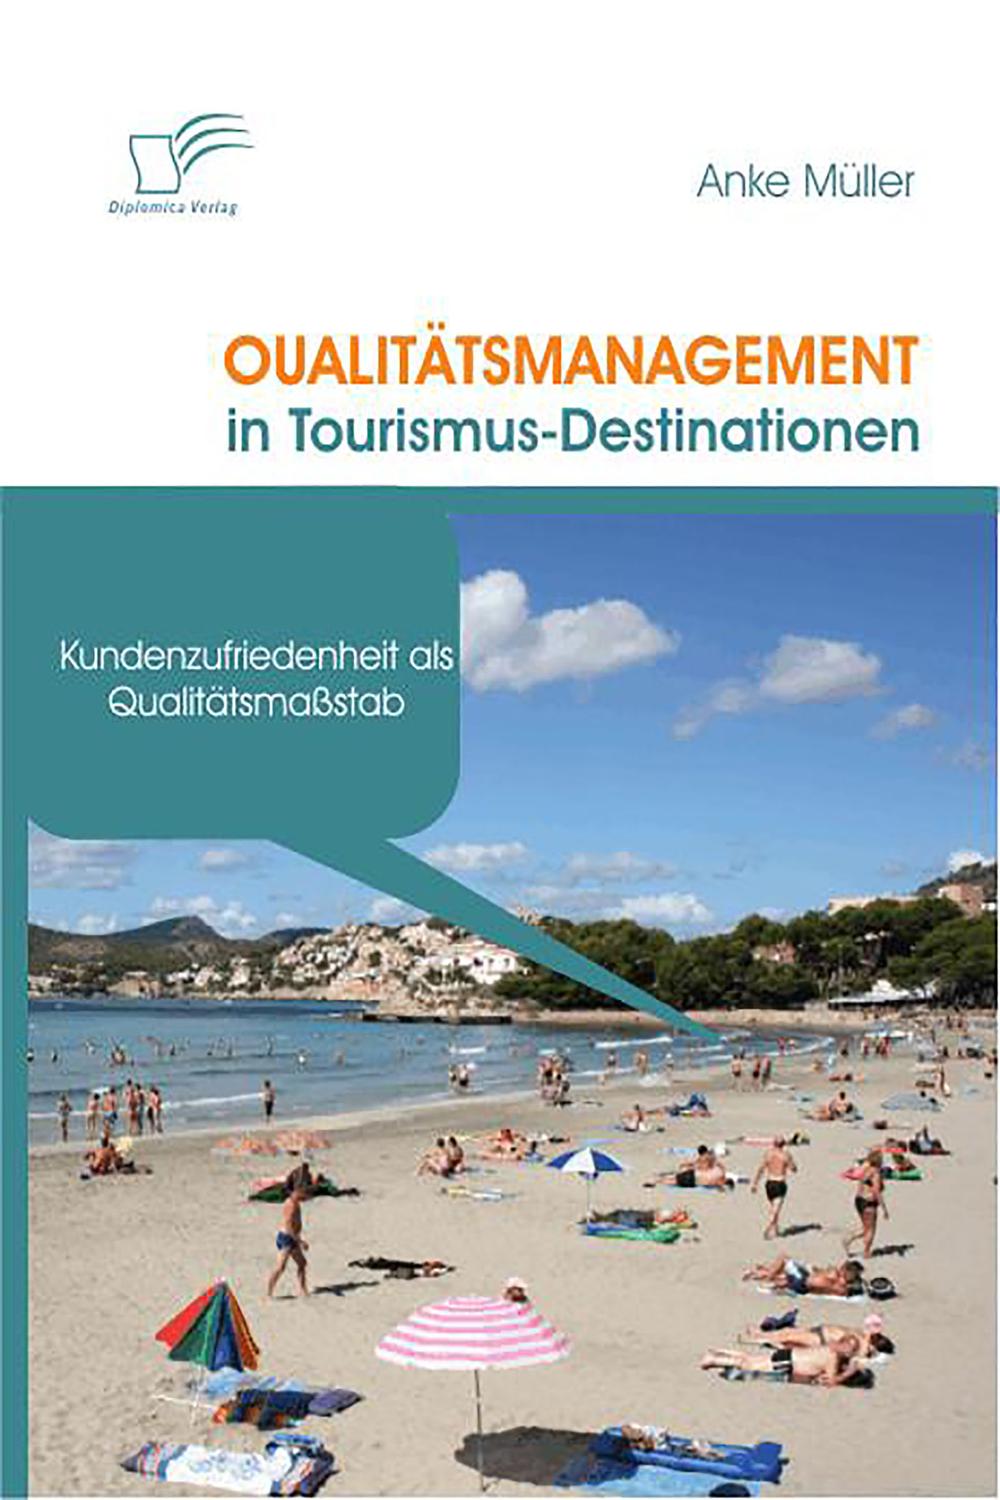 Qualitätsmanagement in Tourismus-Destinationen - Anke Müller